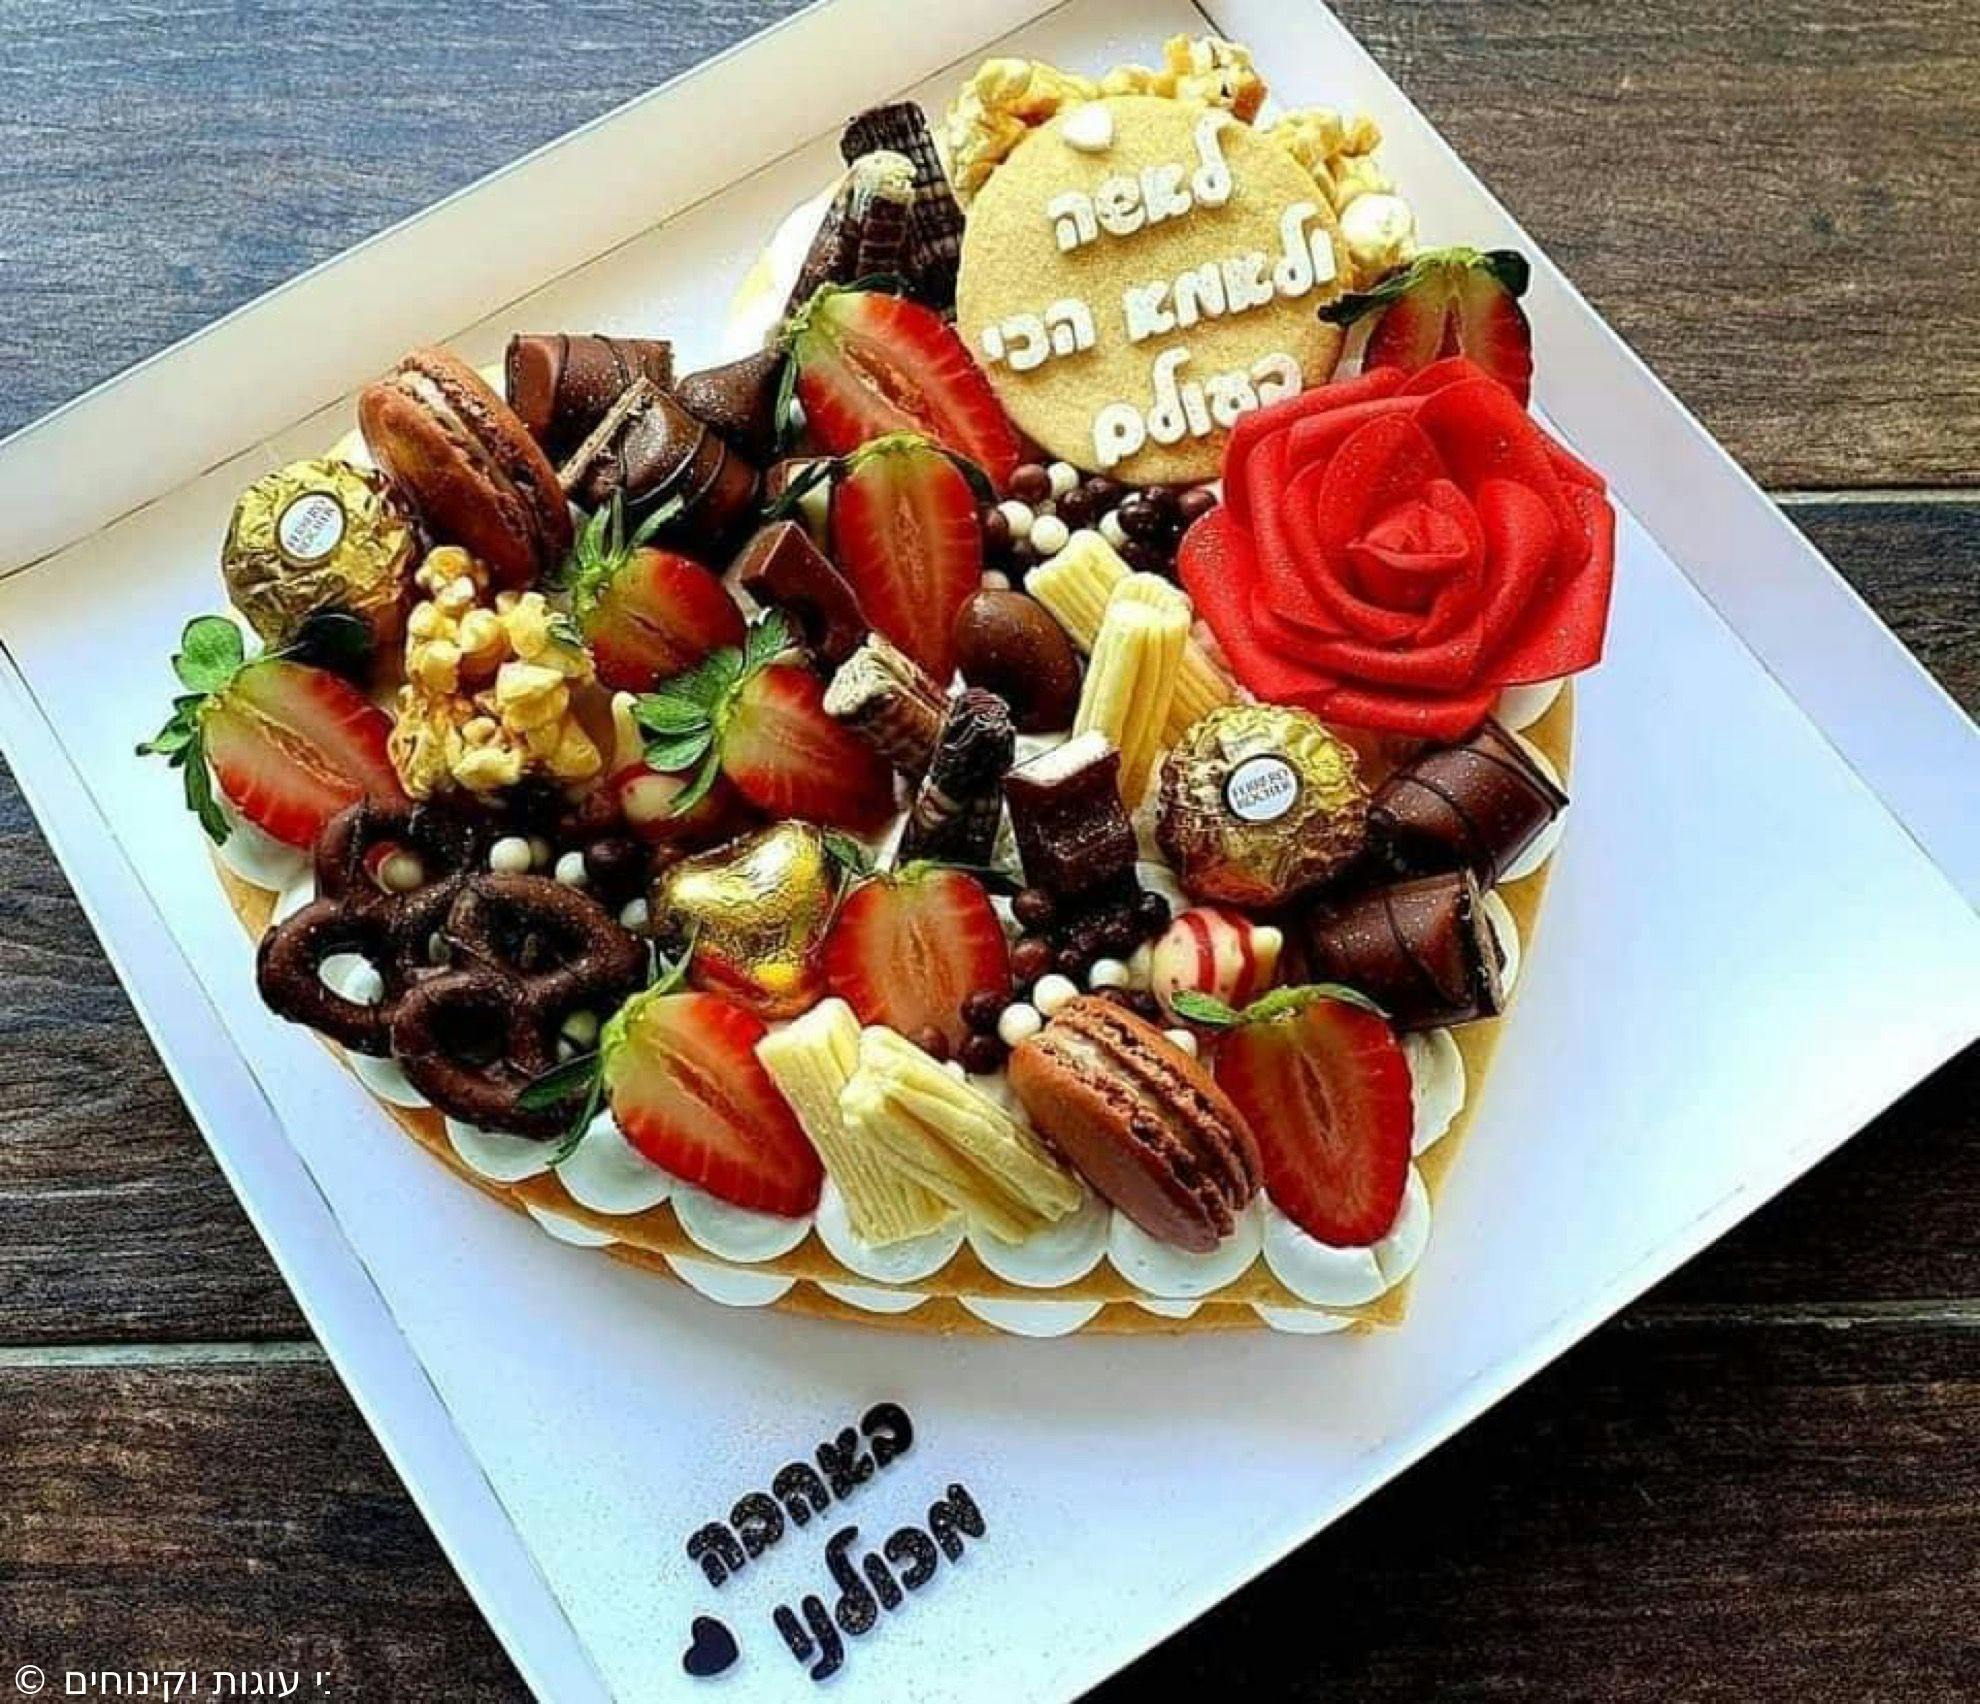 עוגת לב - בצק פריך שקדים
קרם וניל מסקרפונה, תותים ושוקולד